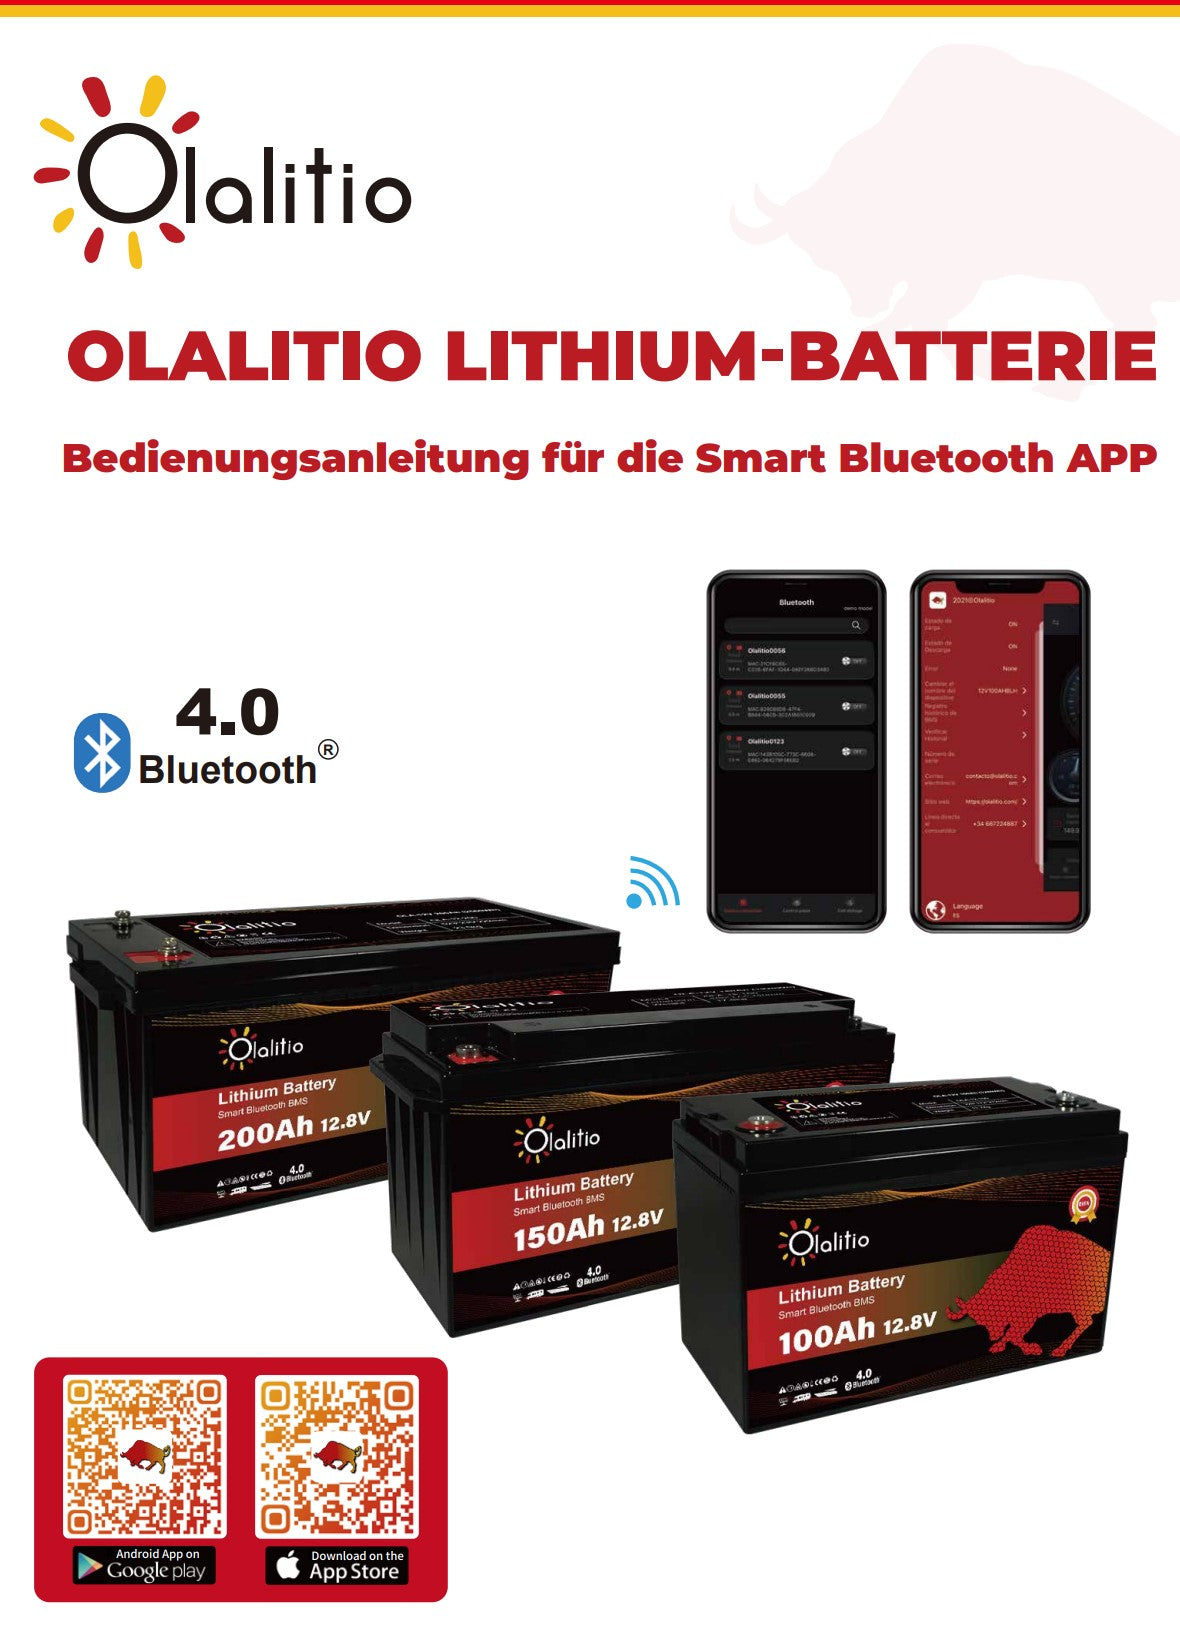 Lithium-Batterie im Wohnmobil: Der große Guide